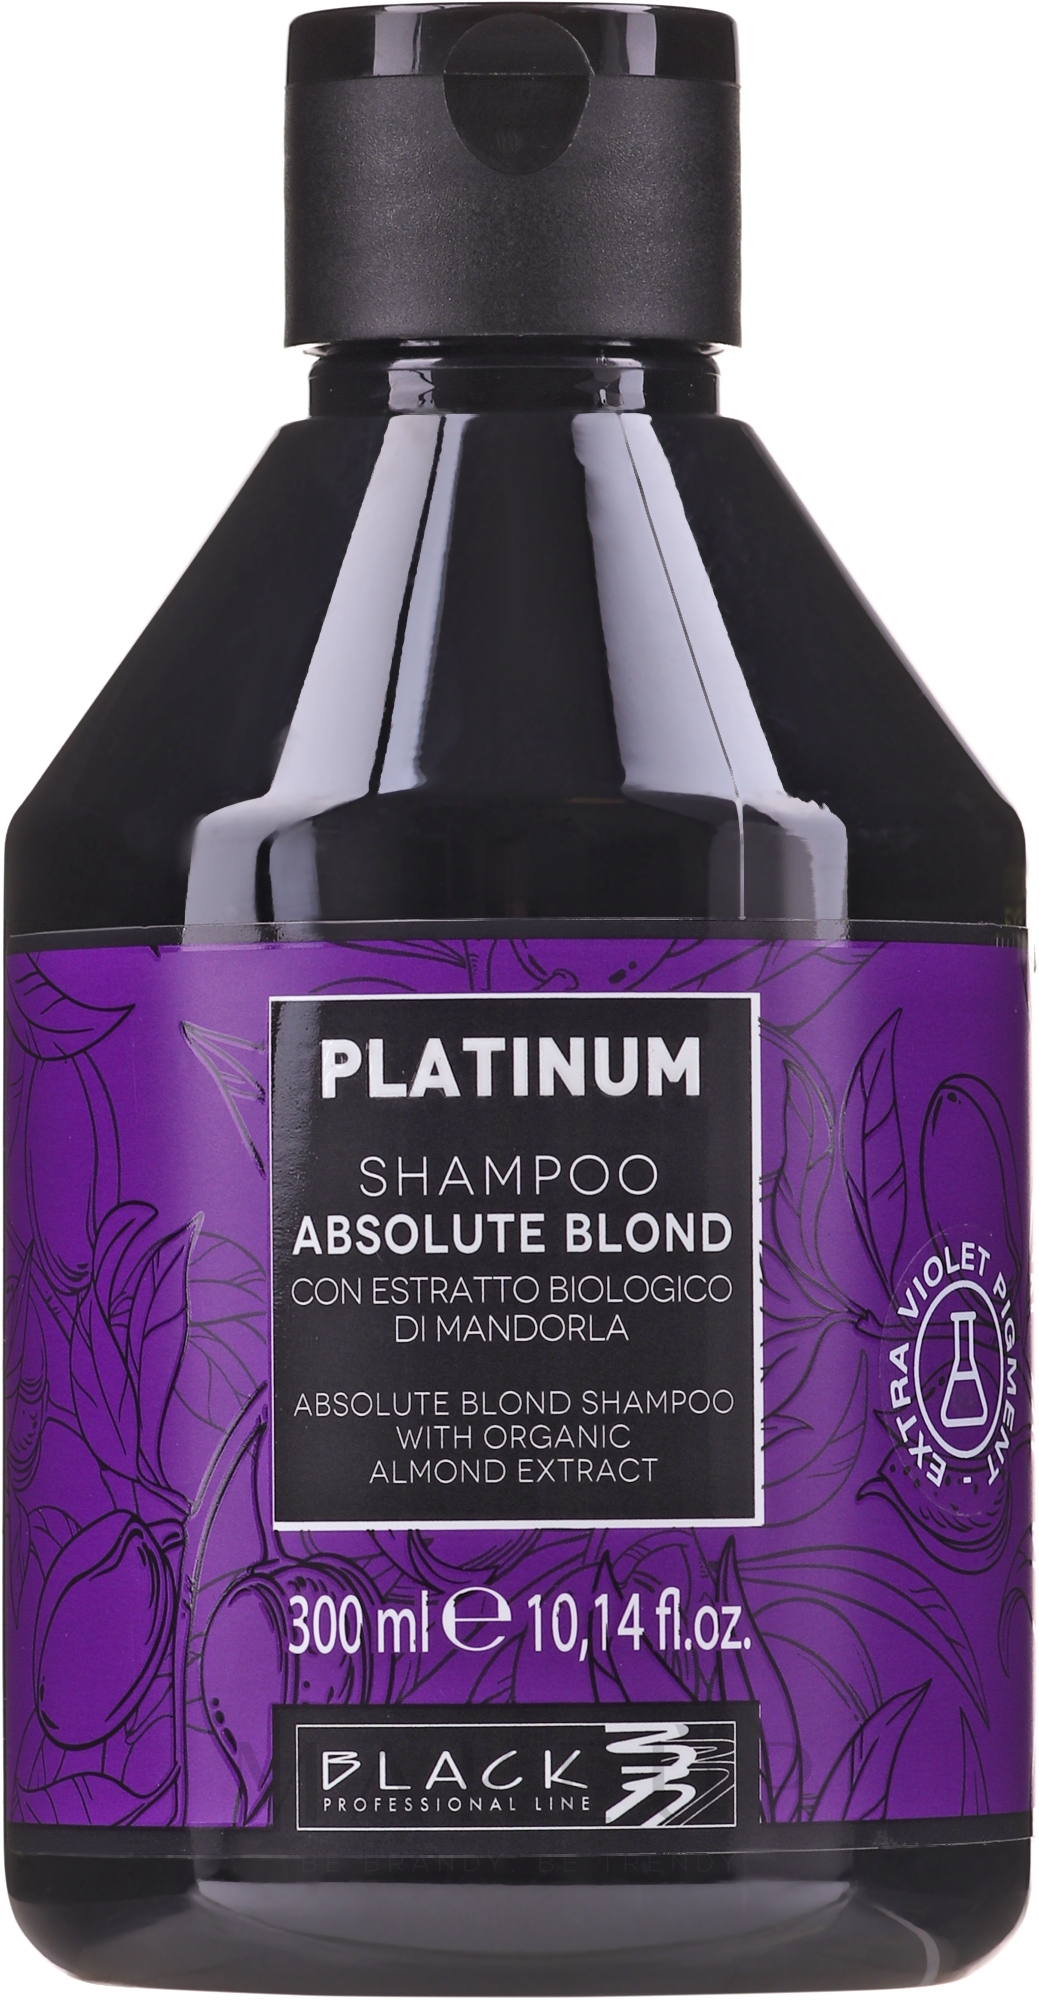 Shampoo für blonde Haare mit Mandelextrakt - Black Professional Line Platinum Absolute Blond Shampoo — Foto 300 ml